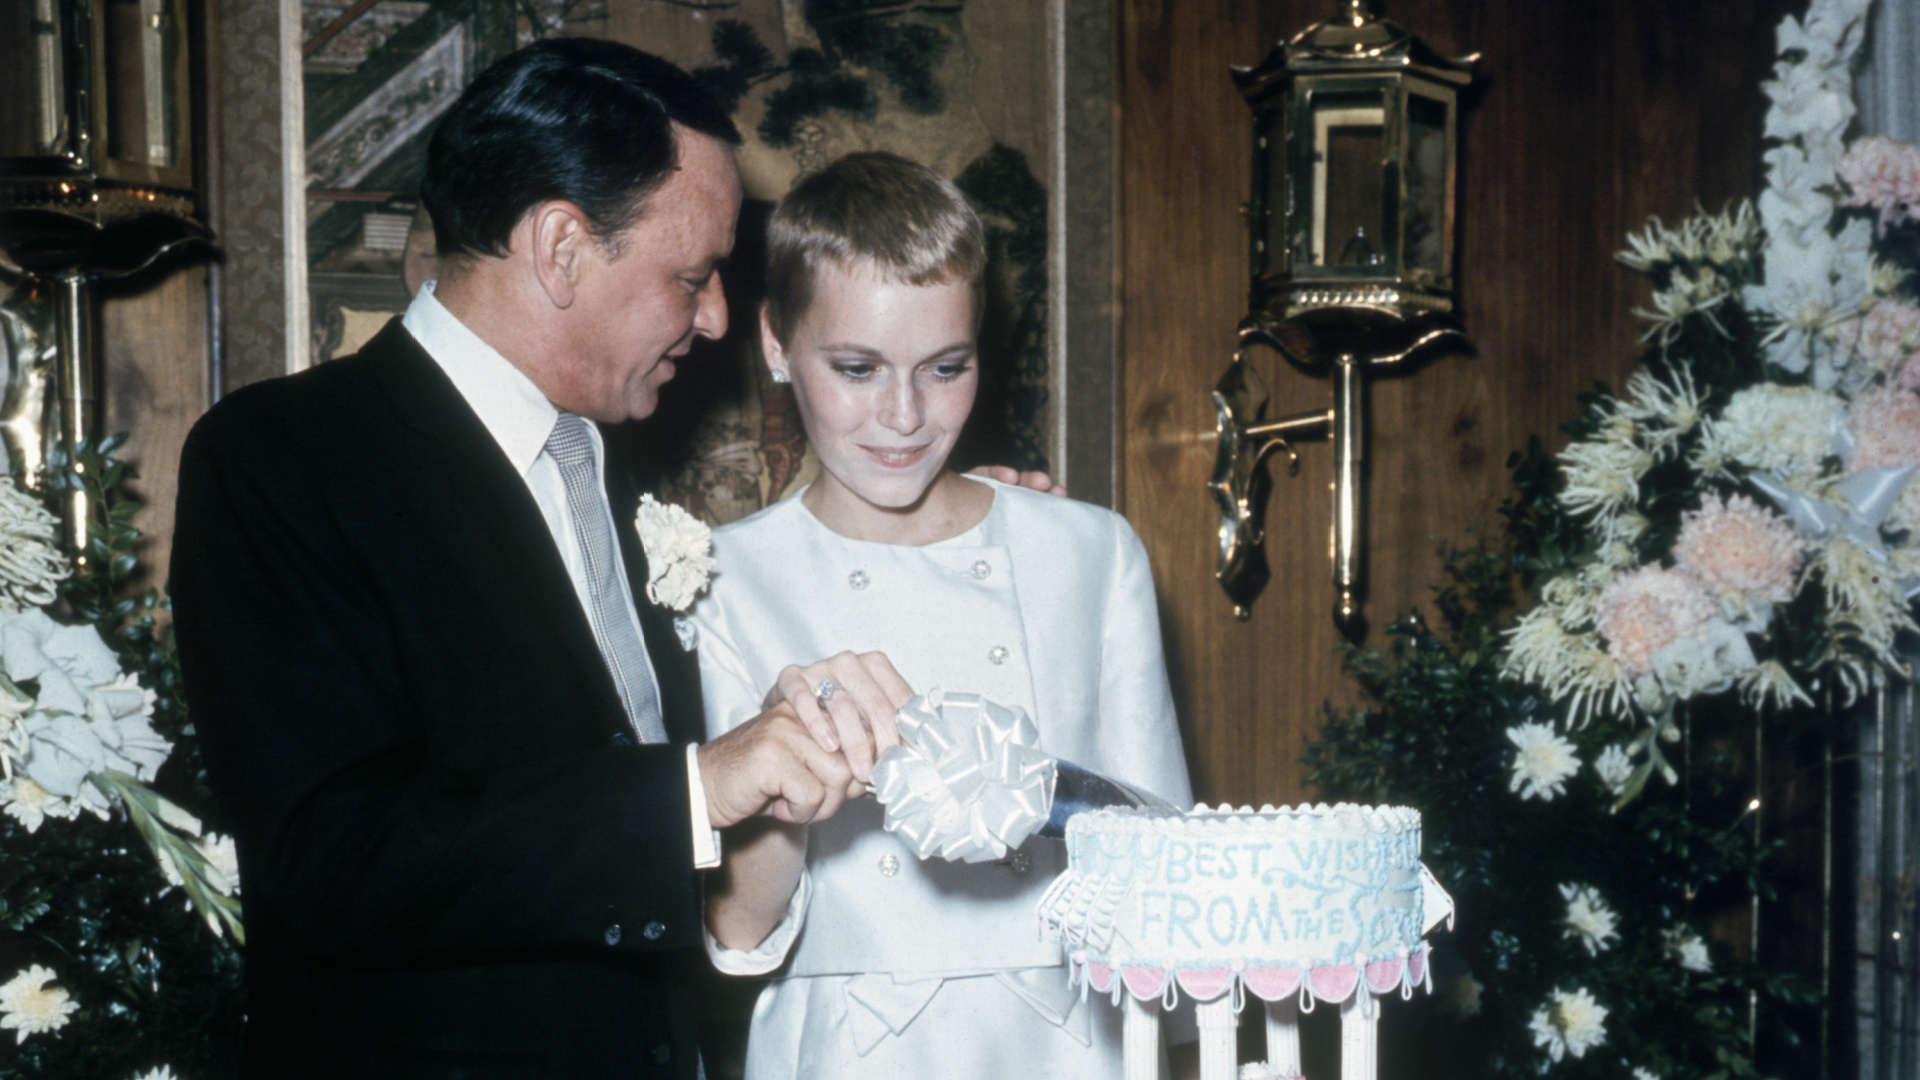 <p>Mia Farrow y Frank Sinatra se conocieron en 1964 en el set de una película y estaban completamente enamorados el uno del otro. Le regaló un hermoso anillo de compromiso y se casaron. Después de eso, Sinatra le pidió que renunciara a su trabajo, algo que fue rechazado por Farrow, que acabó poniéndole sobre la mesa los papeles del divorcio.</p>